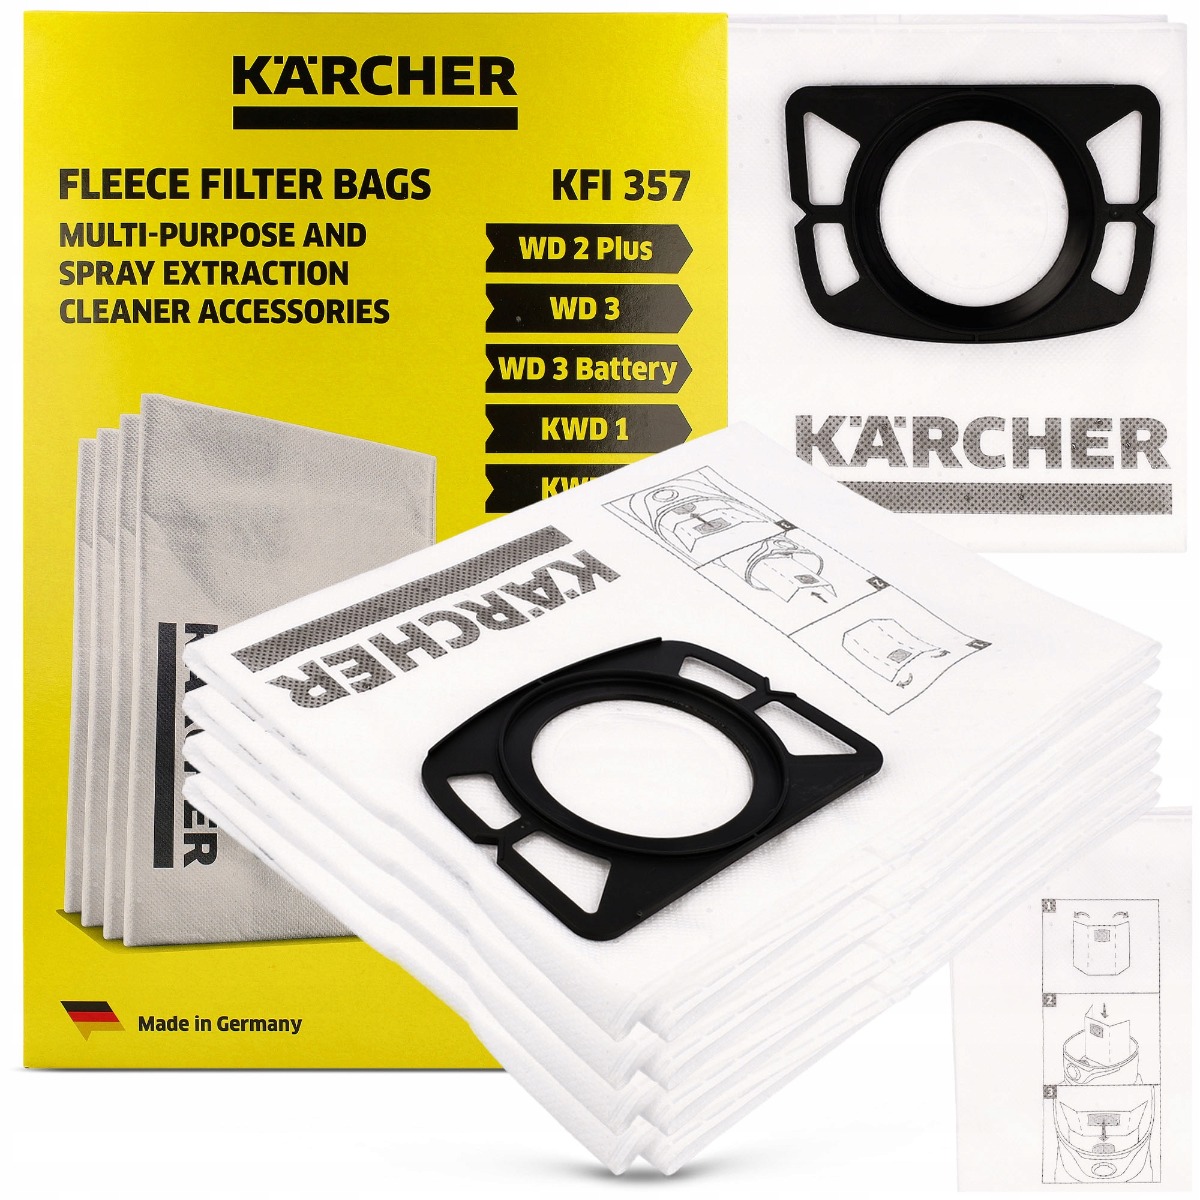 Kärcher flísové filtrační sáčky do vysavače WD2 / WD3 4 ks megamix.shop